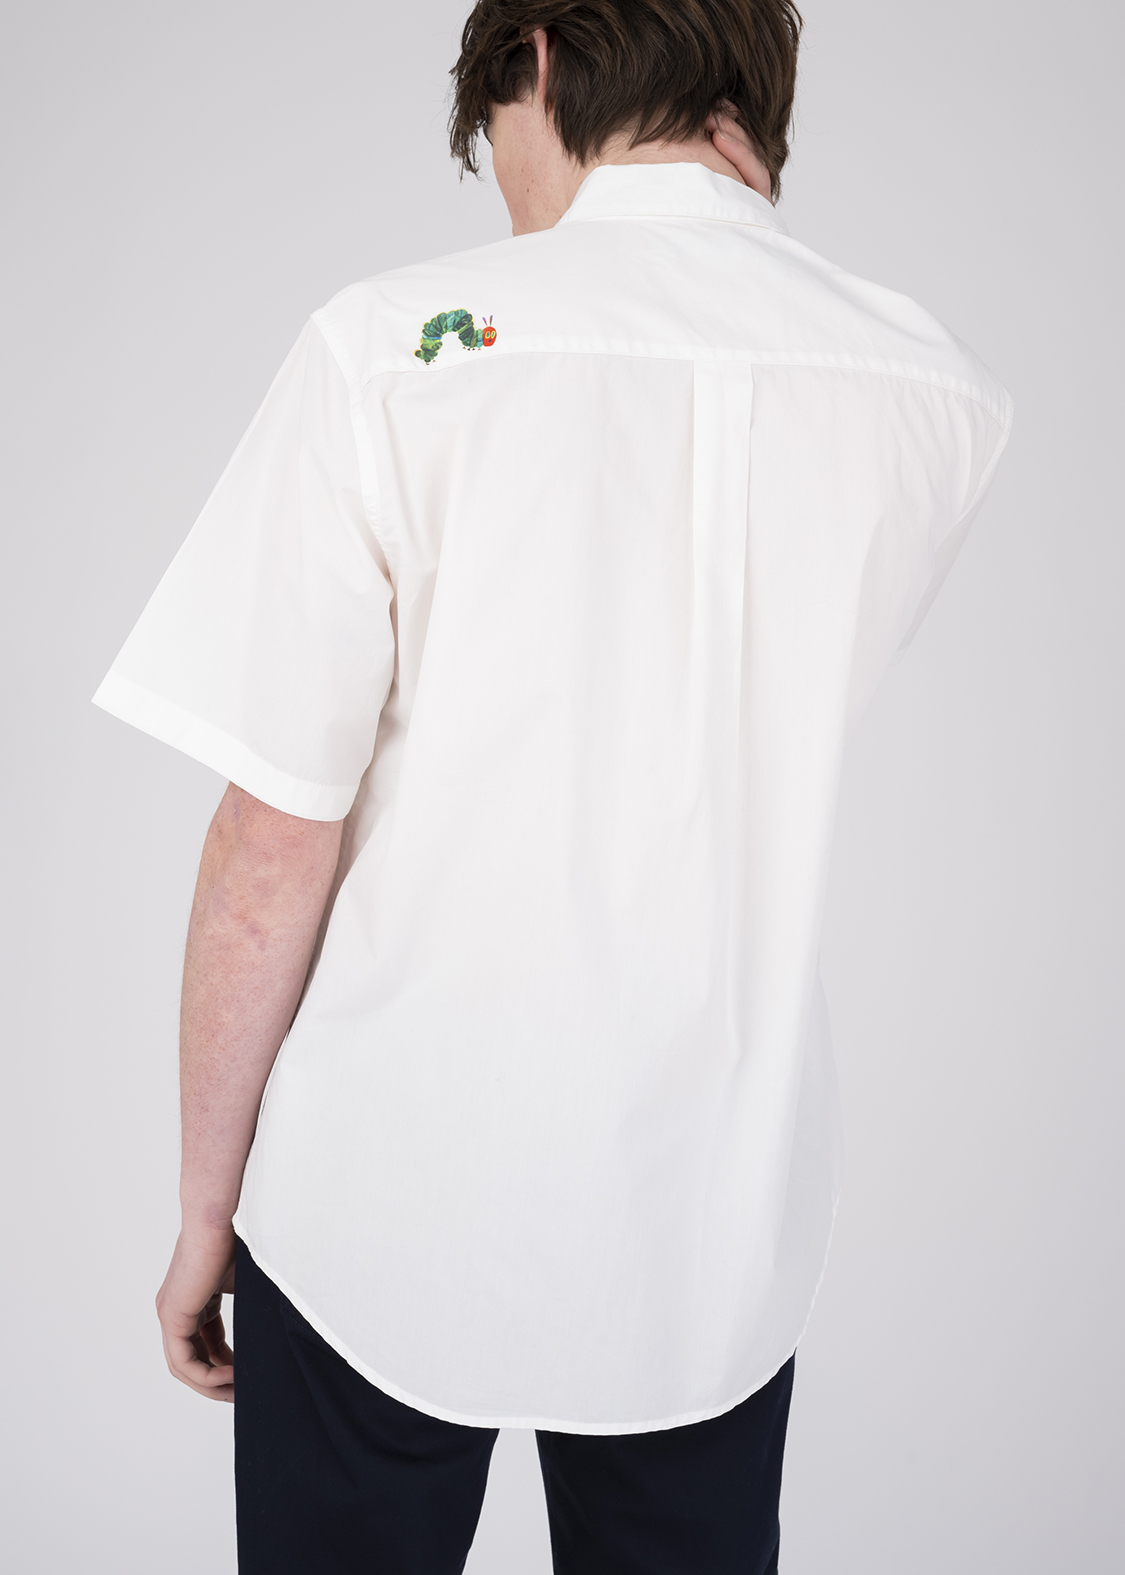 グラニフ「エリック・カール」 半袖シャツ「ファイブ フルーツ」背面